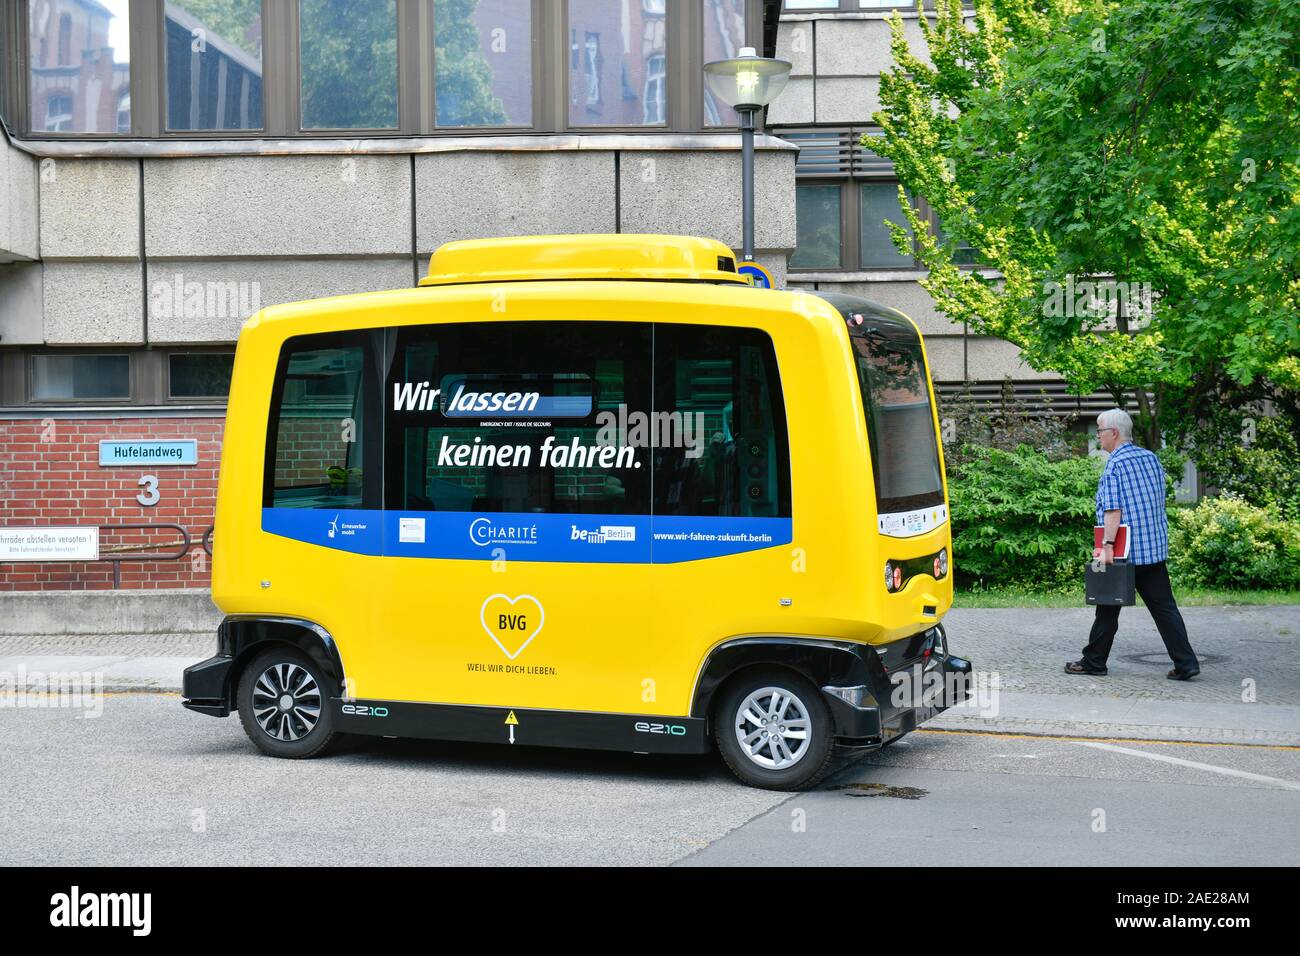 Autonomer Minibus der BVG, Charite, Luisenstraße, Mitte, Berlin, Deutschland Stock Photo